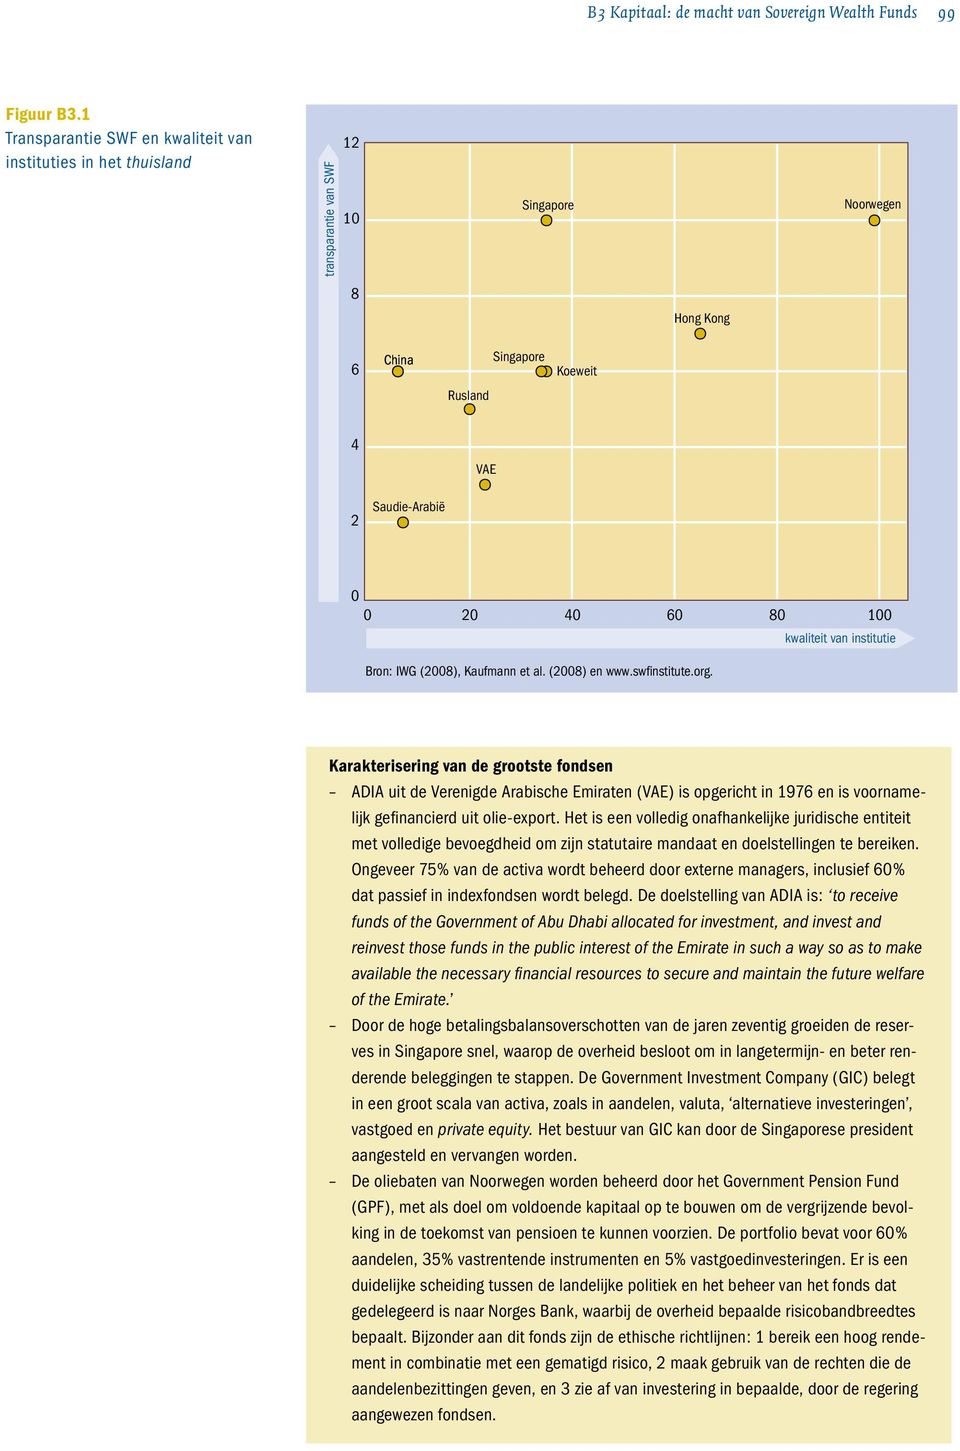 100 kwaliteit van institutie Bron: IWG (2008), Kaufmann et al. (2008) en www.swfinstitute.org.